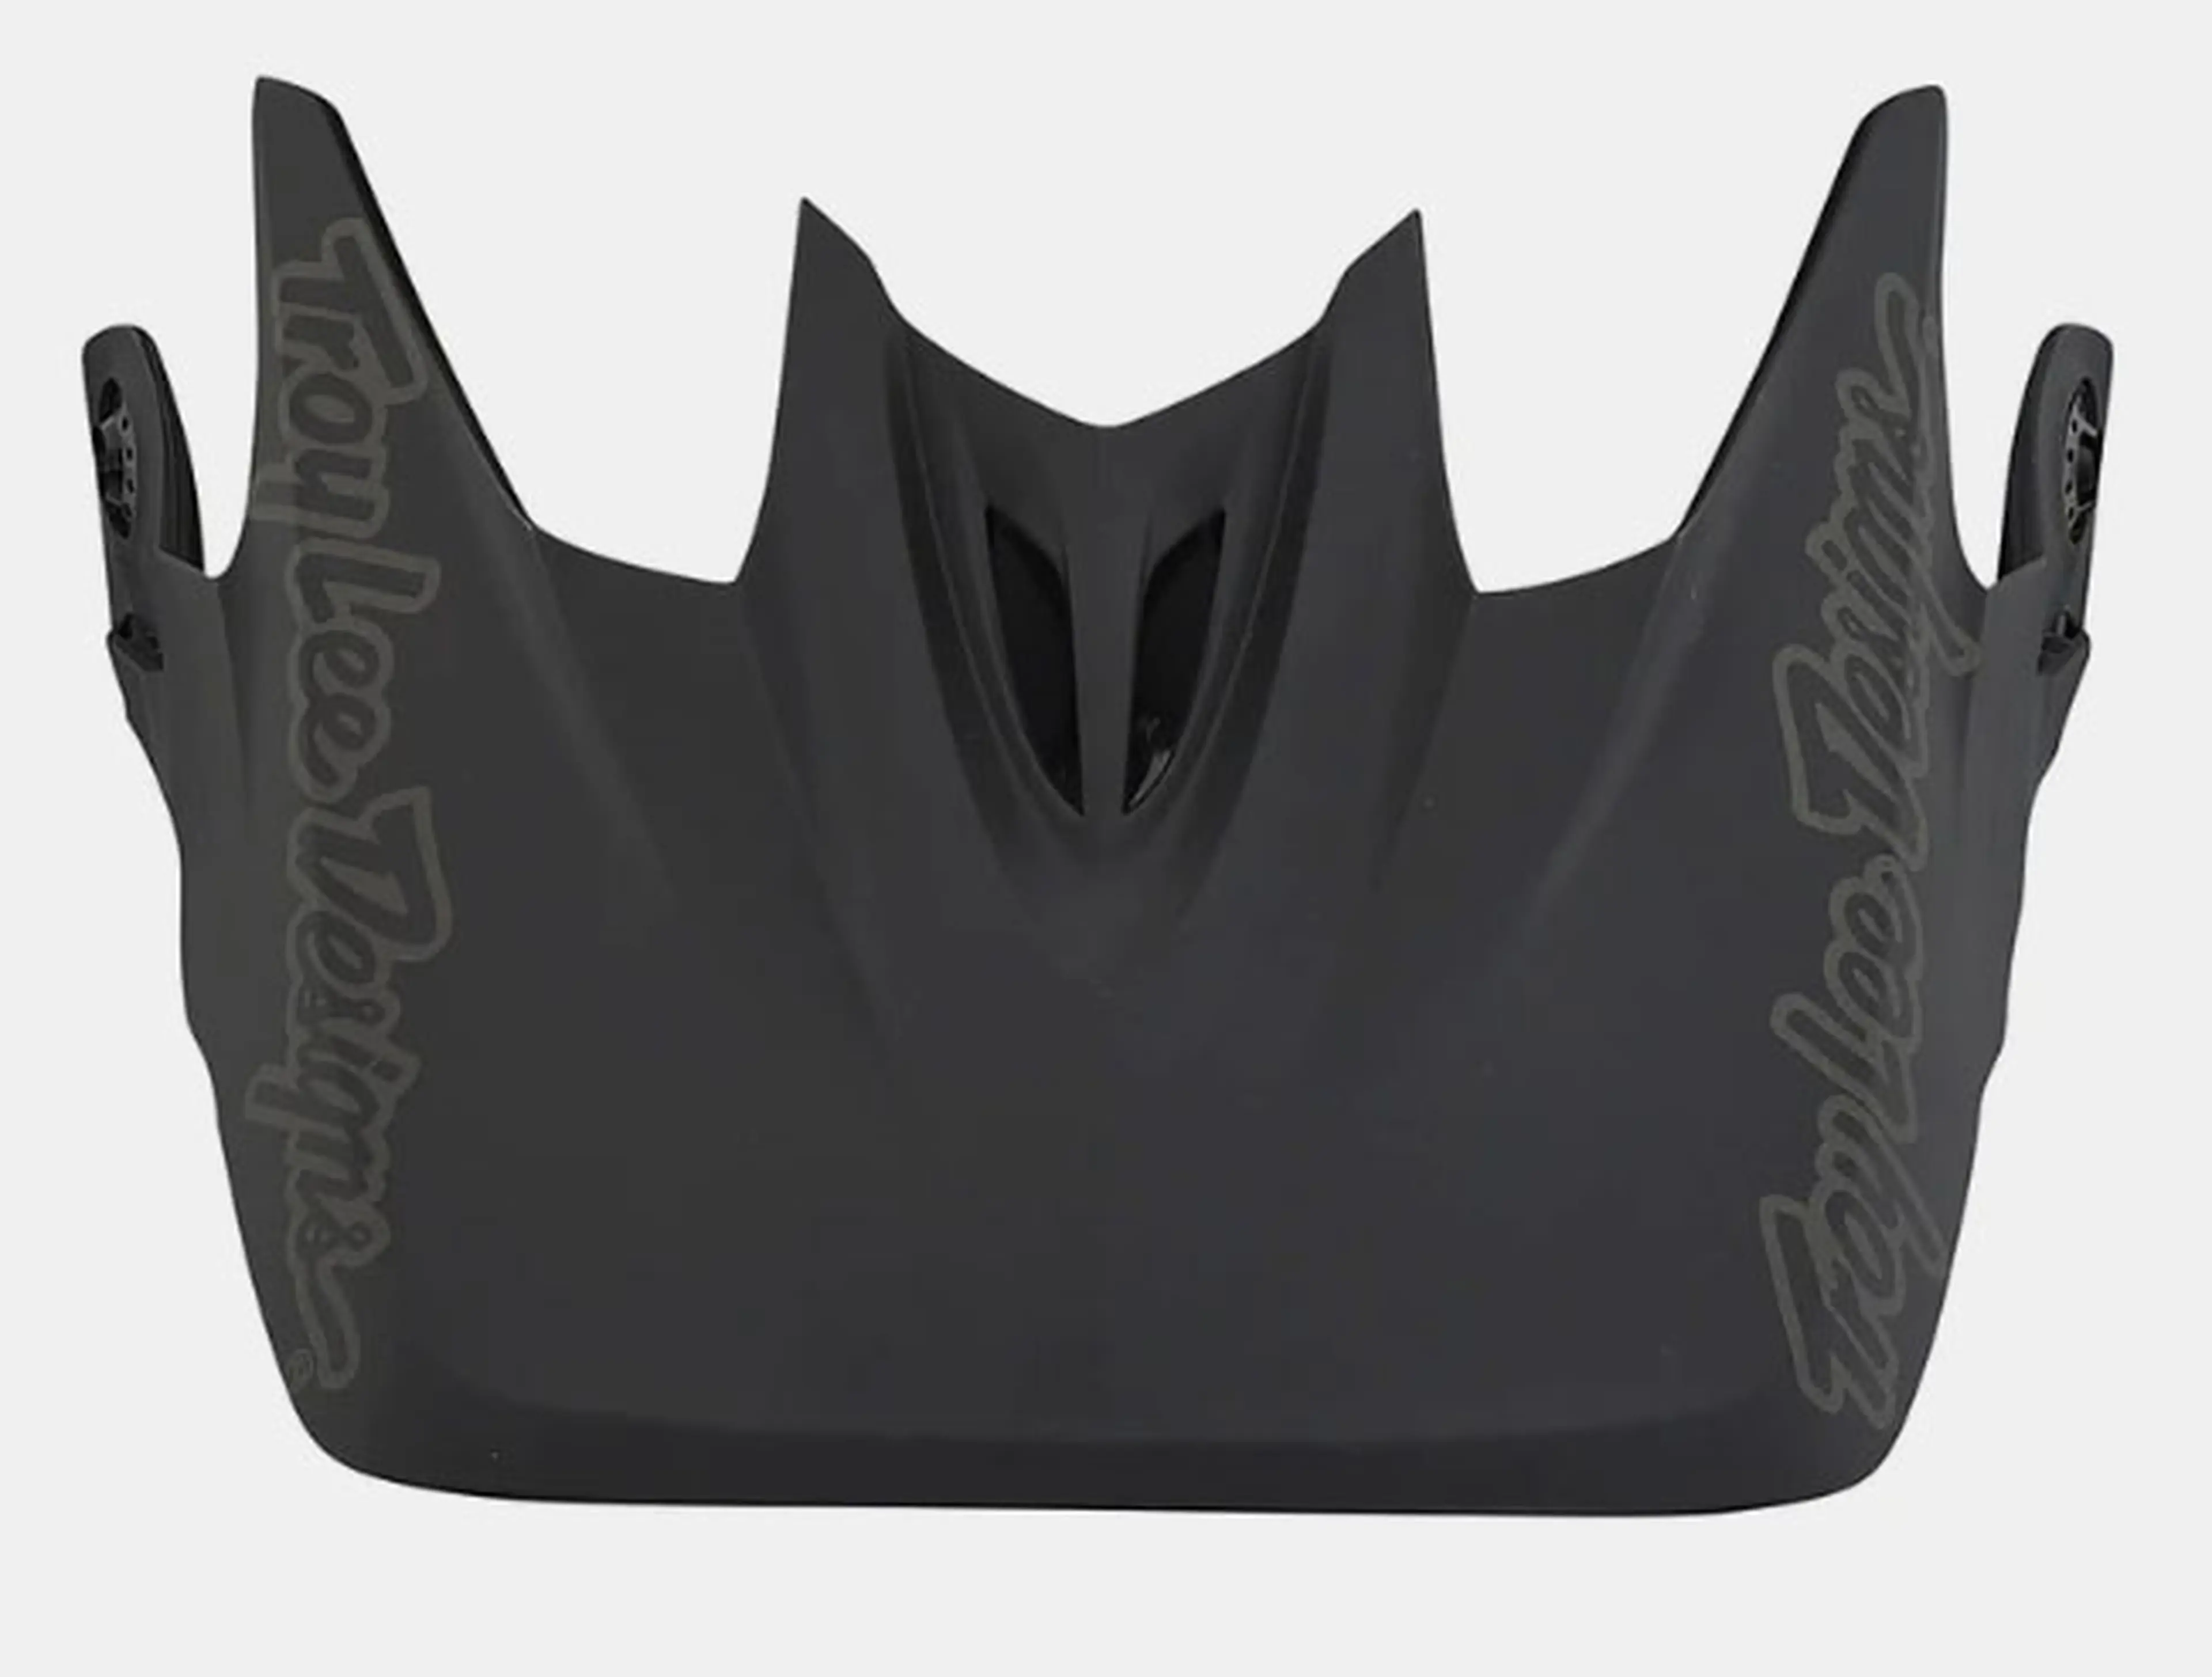 Image Troy Lee Design's D3 Mono Black visor